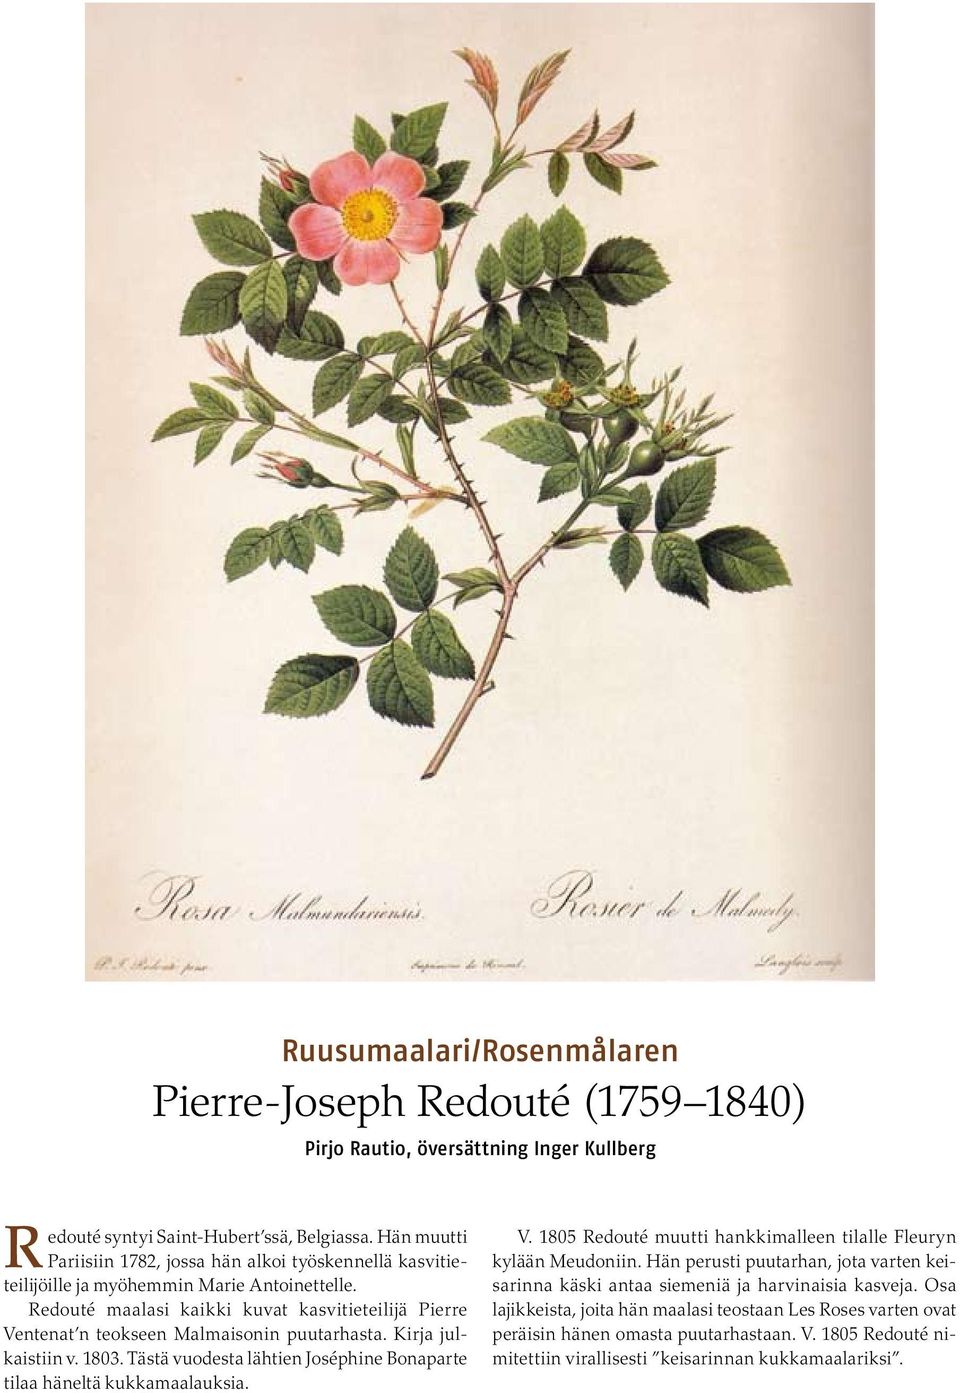 Redouté maalasi kaikki kuvat kasvitieteilijä Pierre Ventenat n teokseen Malmaisonin puutarhasta. Kirja julkaistiin v. 1803. Tästä vuodesta lähtien Joséphine Bonaparte tilaa häneltä kukkamaalauksia. V. 1805 Redouté muutti hankkimalleen tilalle Fleuryn kylään Meudoniin.